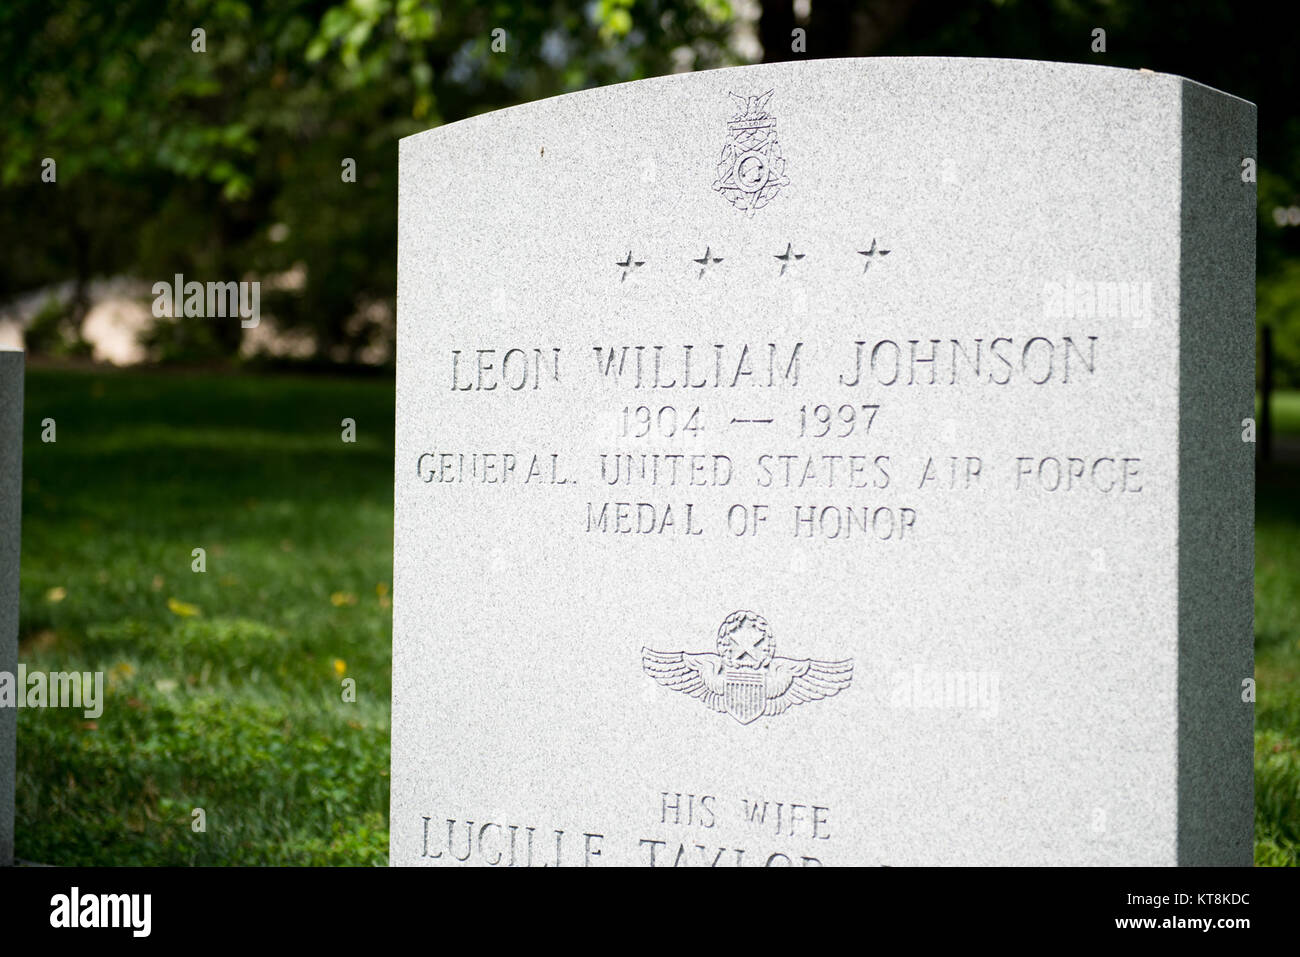 U.S. Air Force Le Général Leon William Johnson, né le 13 septembre 1904 et décédé le 10 novembre 1997, est enterré dans la section 7A, Tombe 209 de Arlington National Cemetery. Johnson est un récipiendaire de la médaille d'honneur. (U.S. Photo de l'armée par Rachel Larue/libérés) Banque D'Images